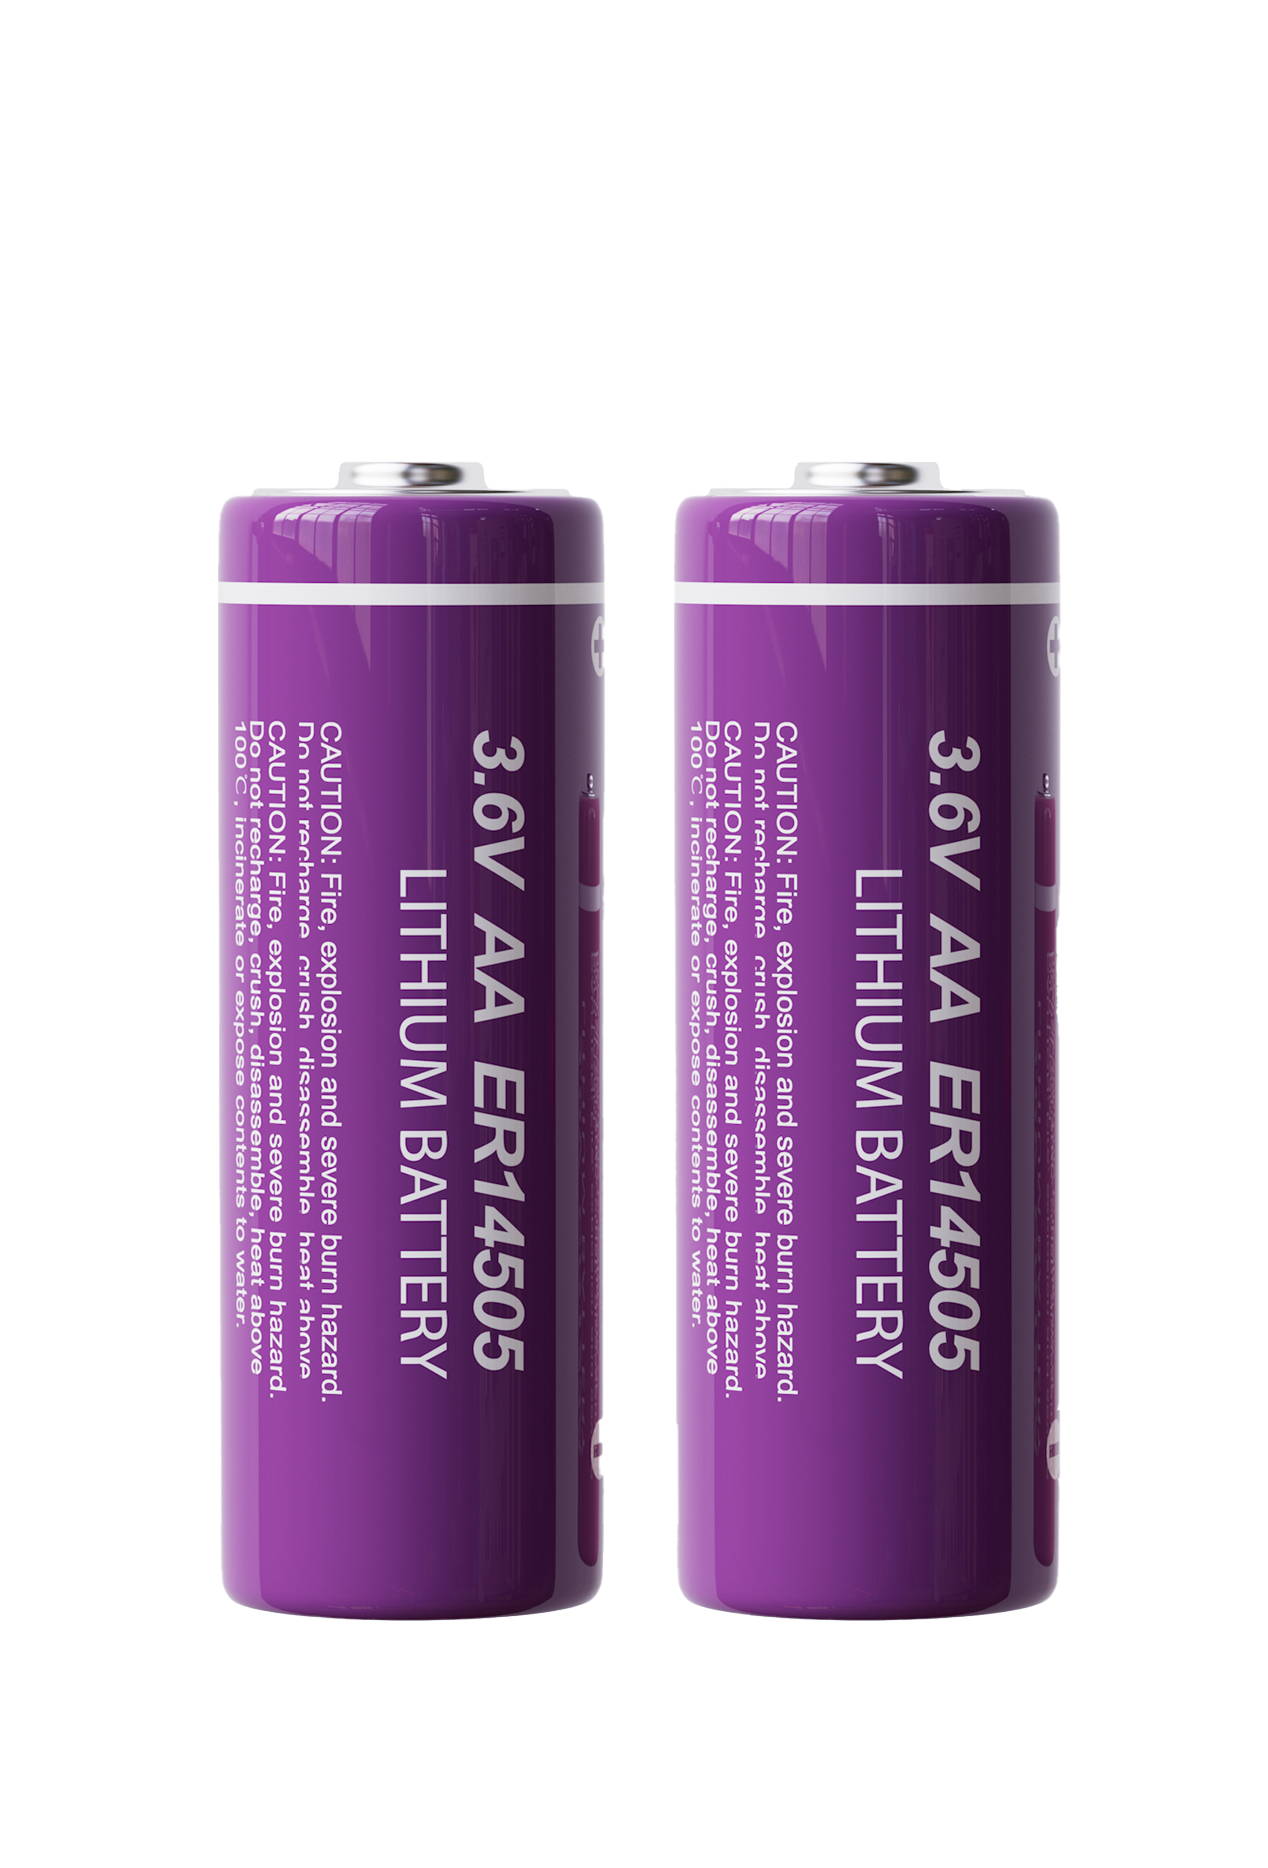 Li-Socl2 Batteries